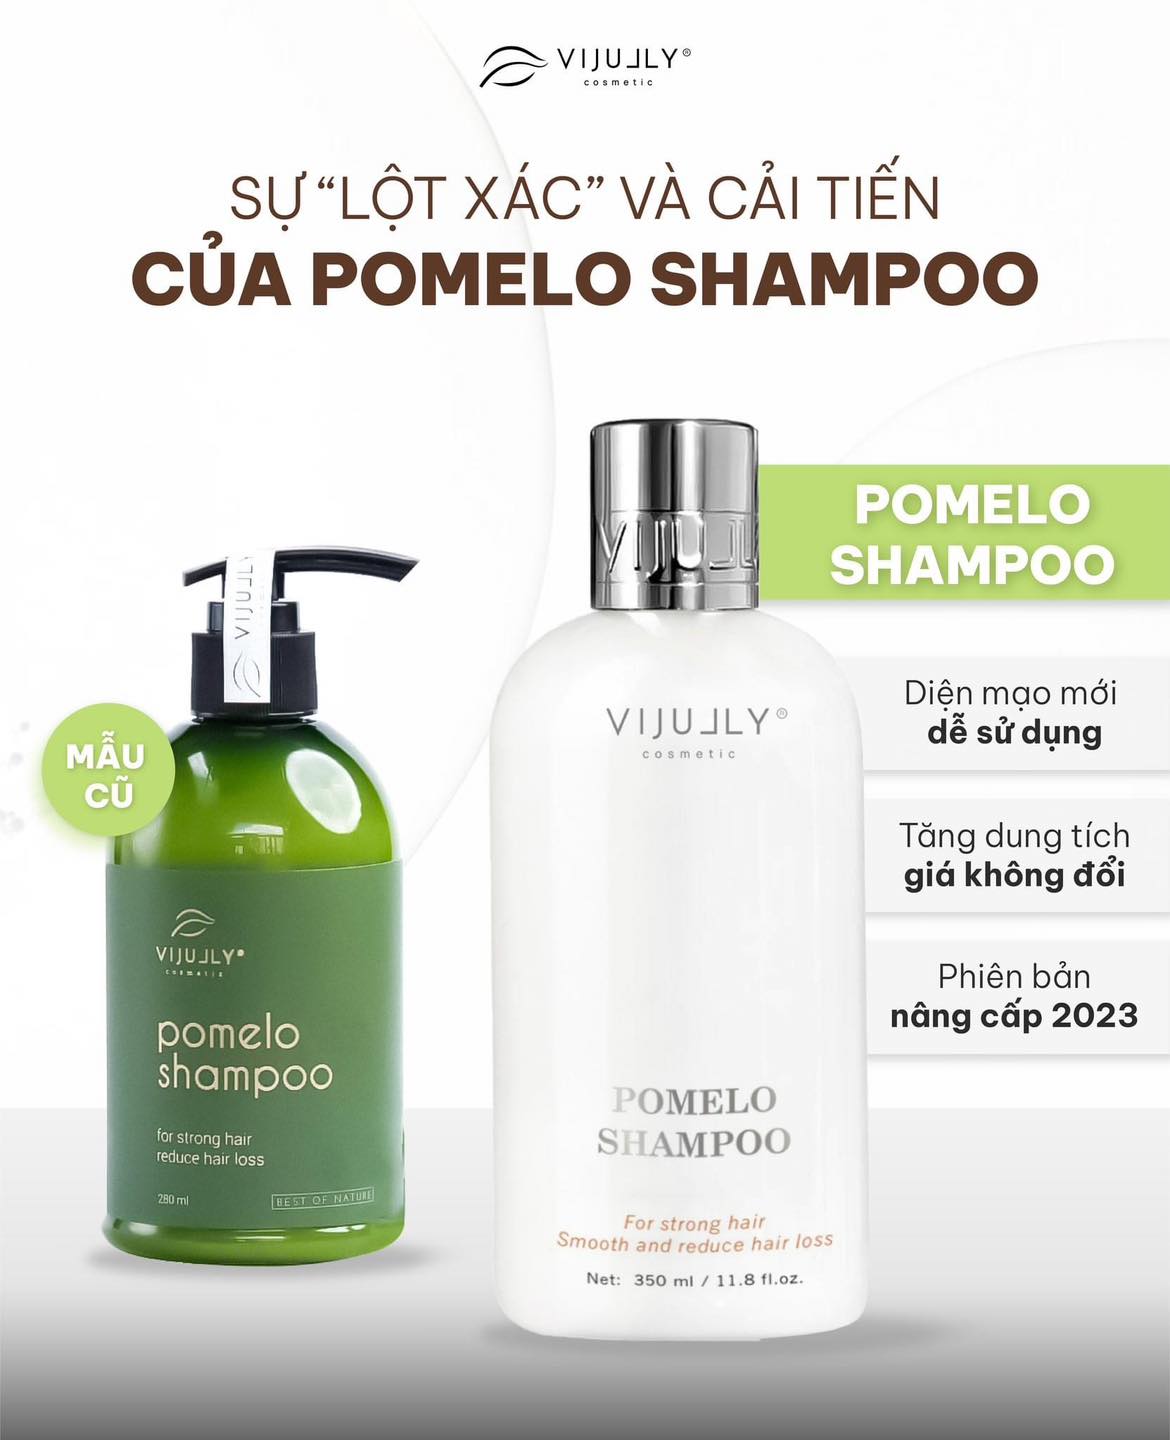 Sự lột xác và cải tiến của Shampoo Pomelo có thực sự xứng đáng